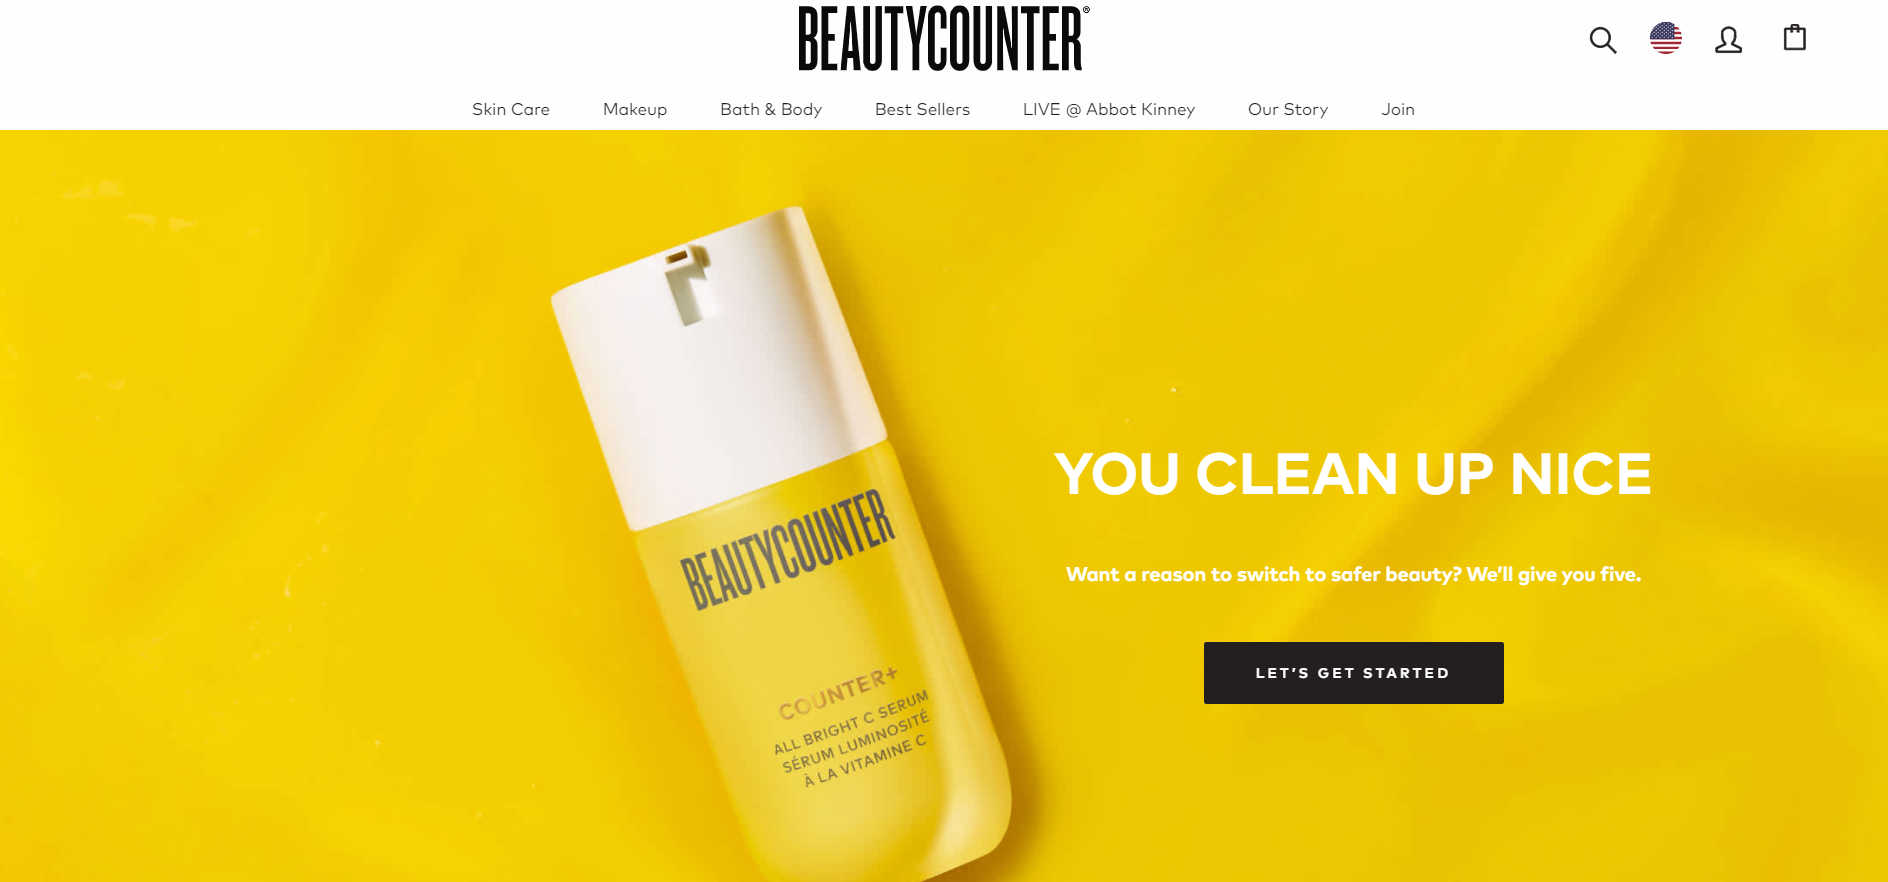 美国清洁美容创业品牌 Beautycounter 被私募基金凯雷集团收购，整体估值达10亿美元